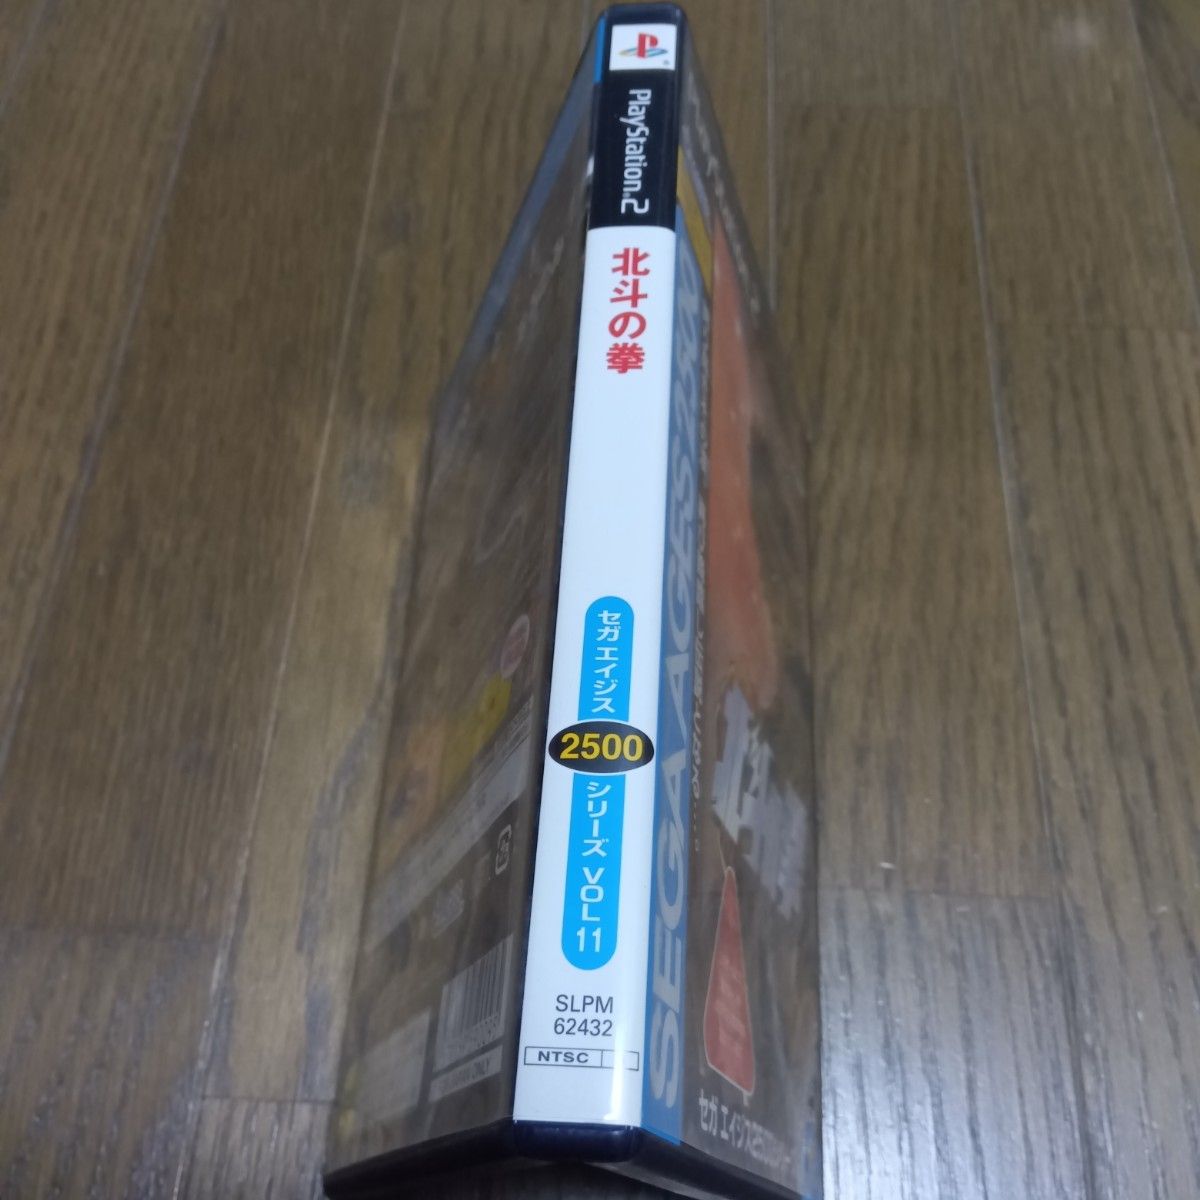 PS2 SEGA AGES 2500 シリーズ Vol.11 北斗の拳